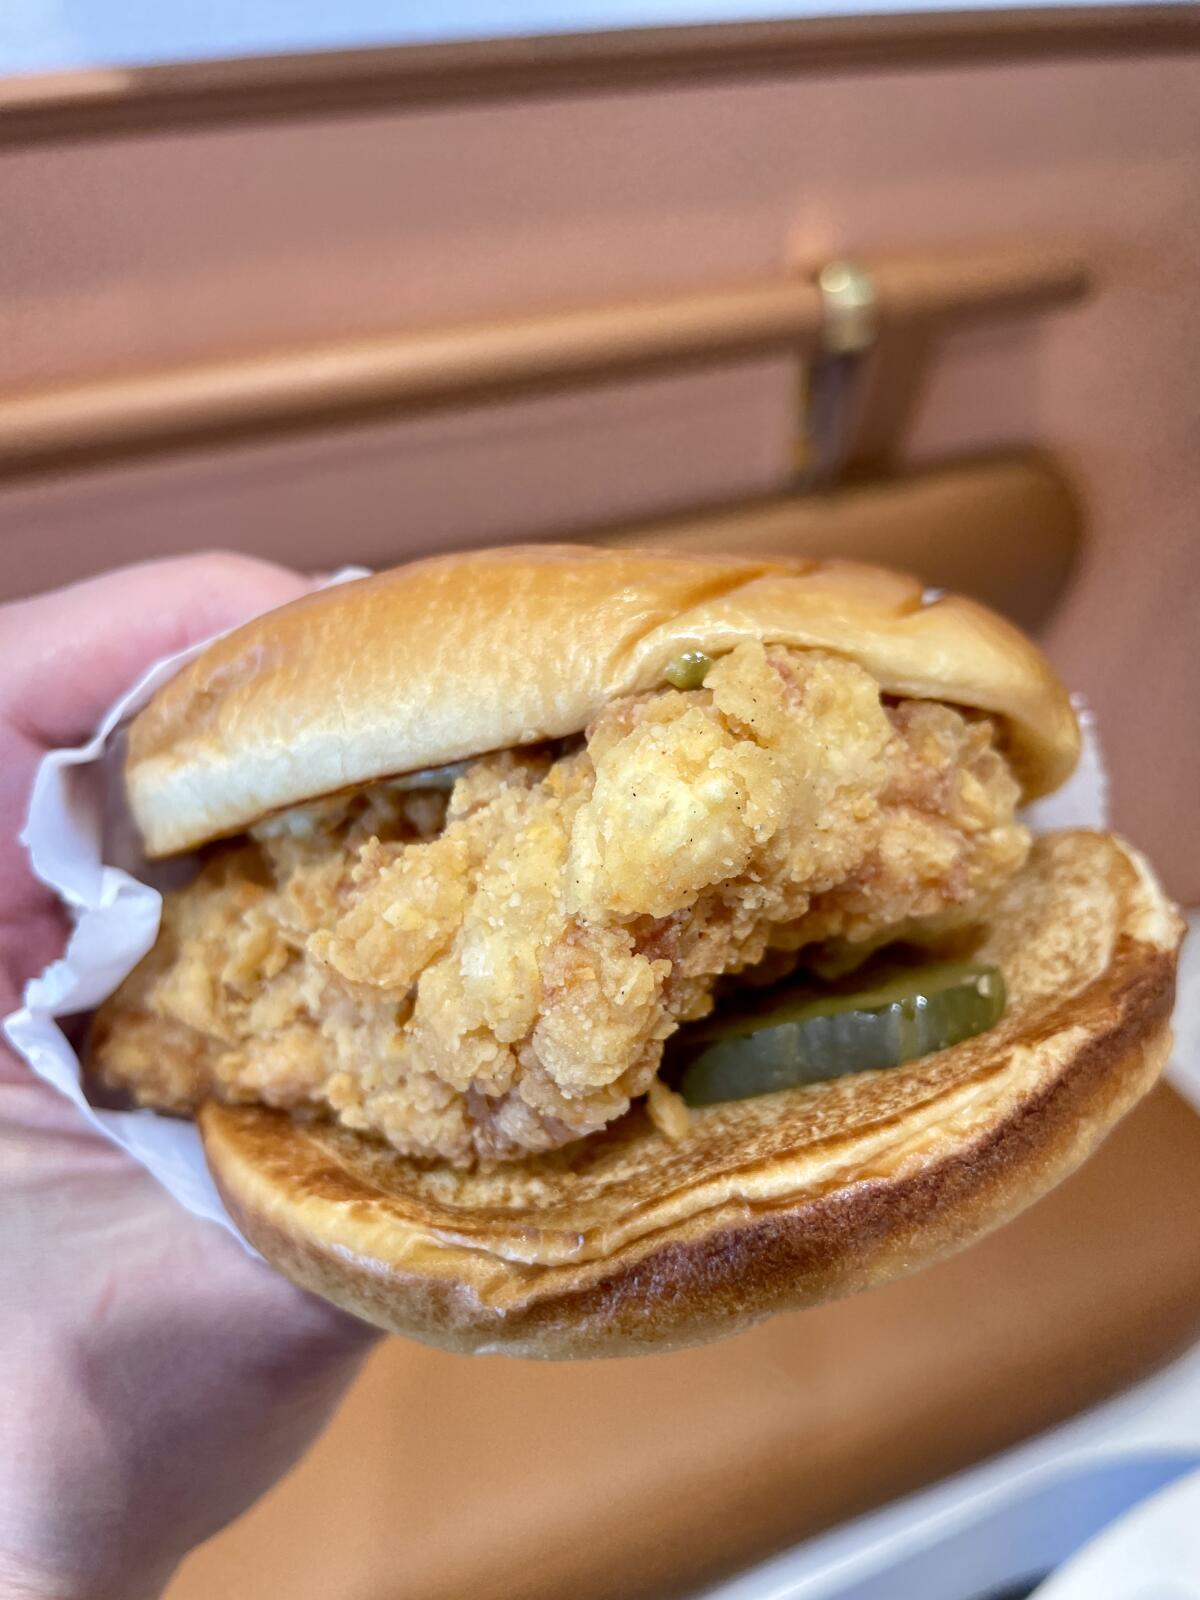 Original chicken sandwich from J&G Fried Chicken in Hacienda Heights.